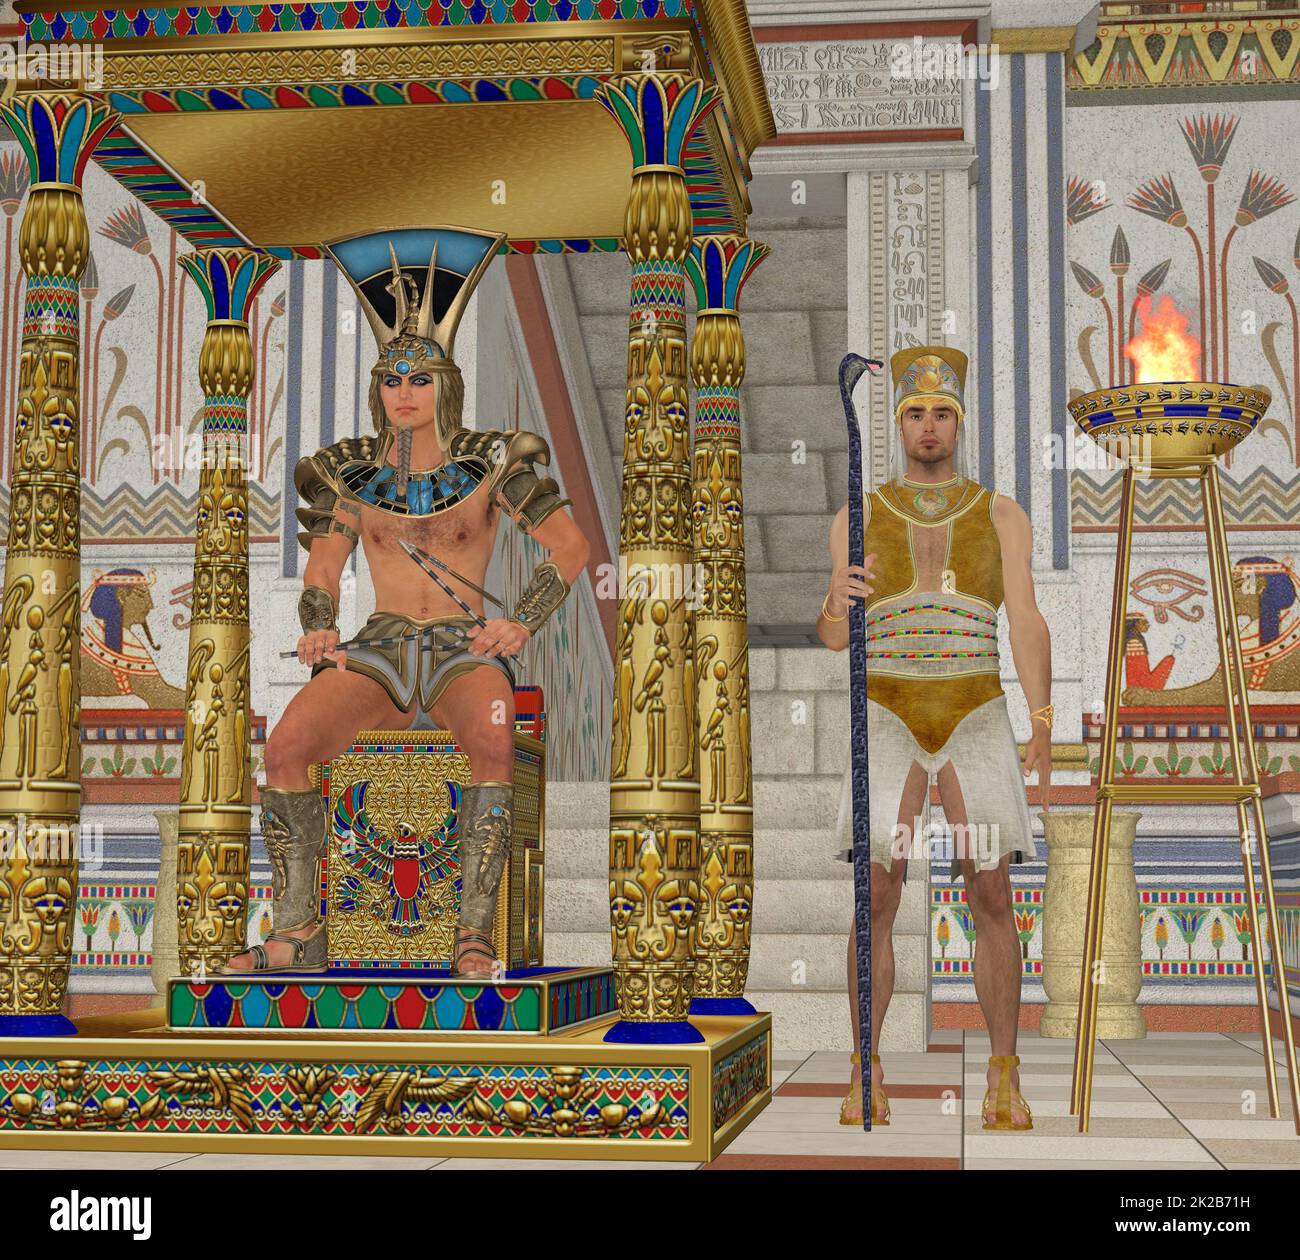 Cultura Egipcia Foto de stock